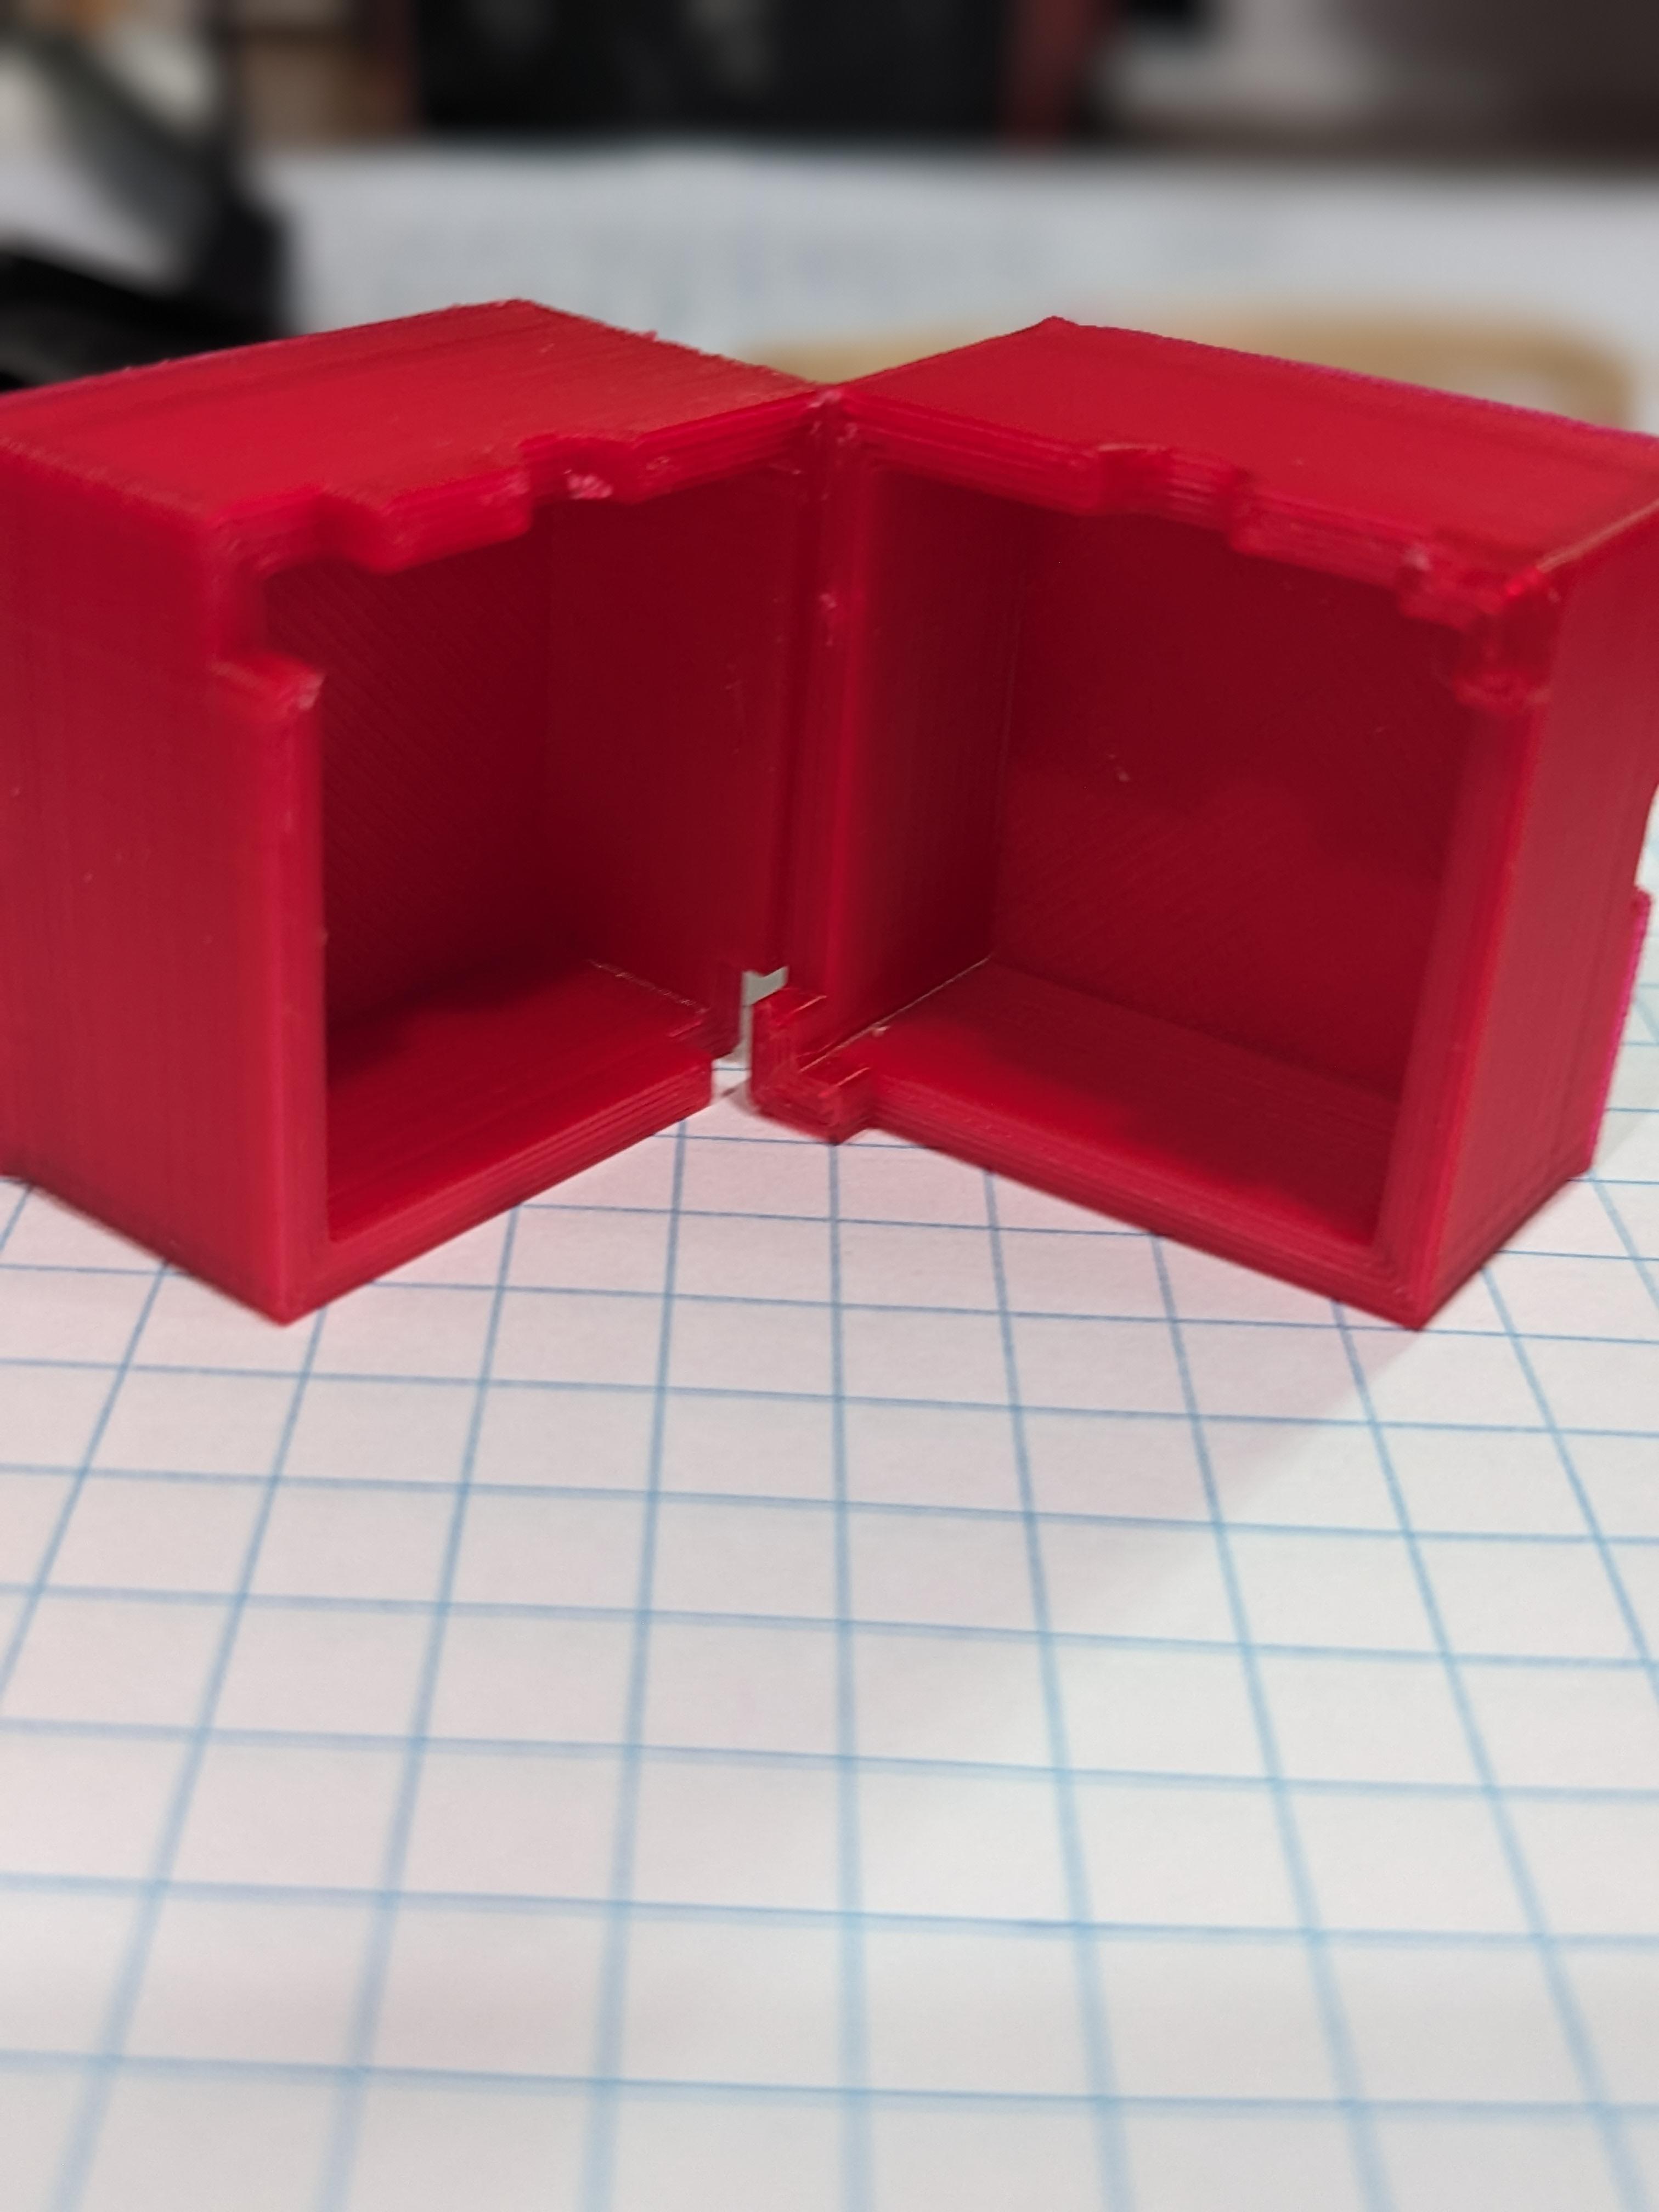 Cube Tomato Mold v.2 3d model